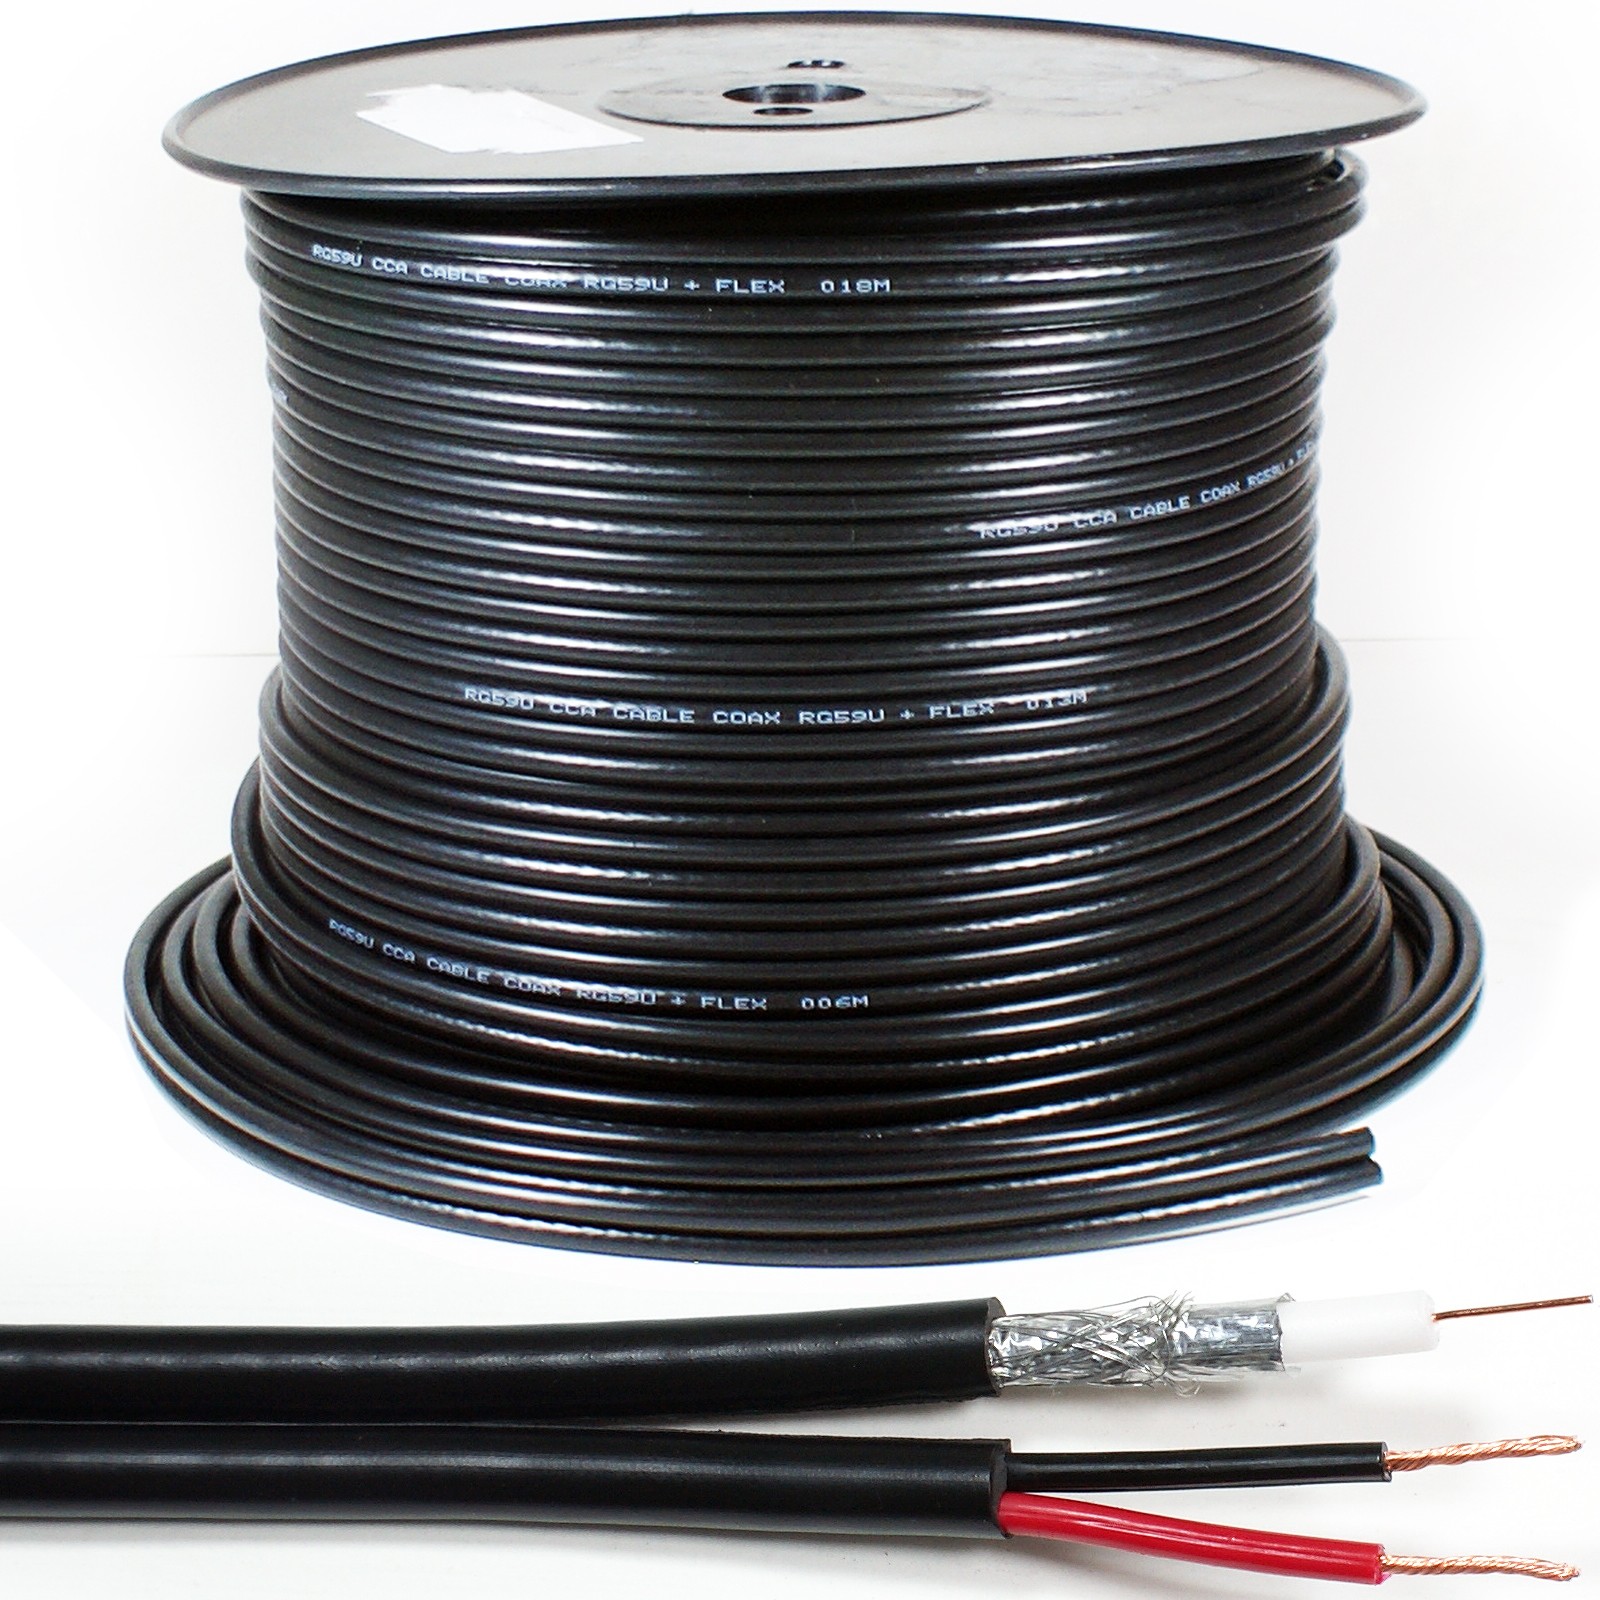 cablu coaxial rg59 cu alimentare 75r 1x0.81mm cupru +128x0.12mm cca / 6mm pvc negru well